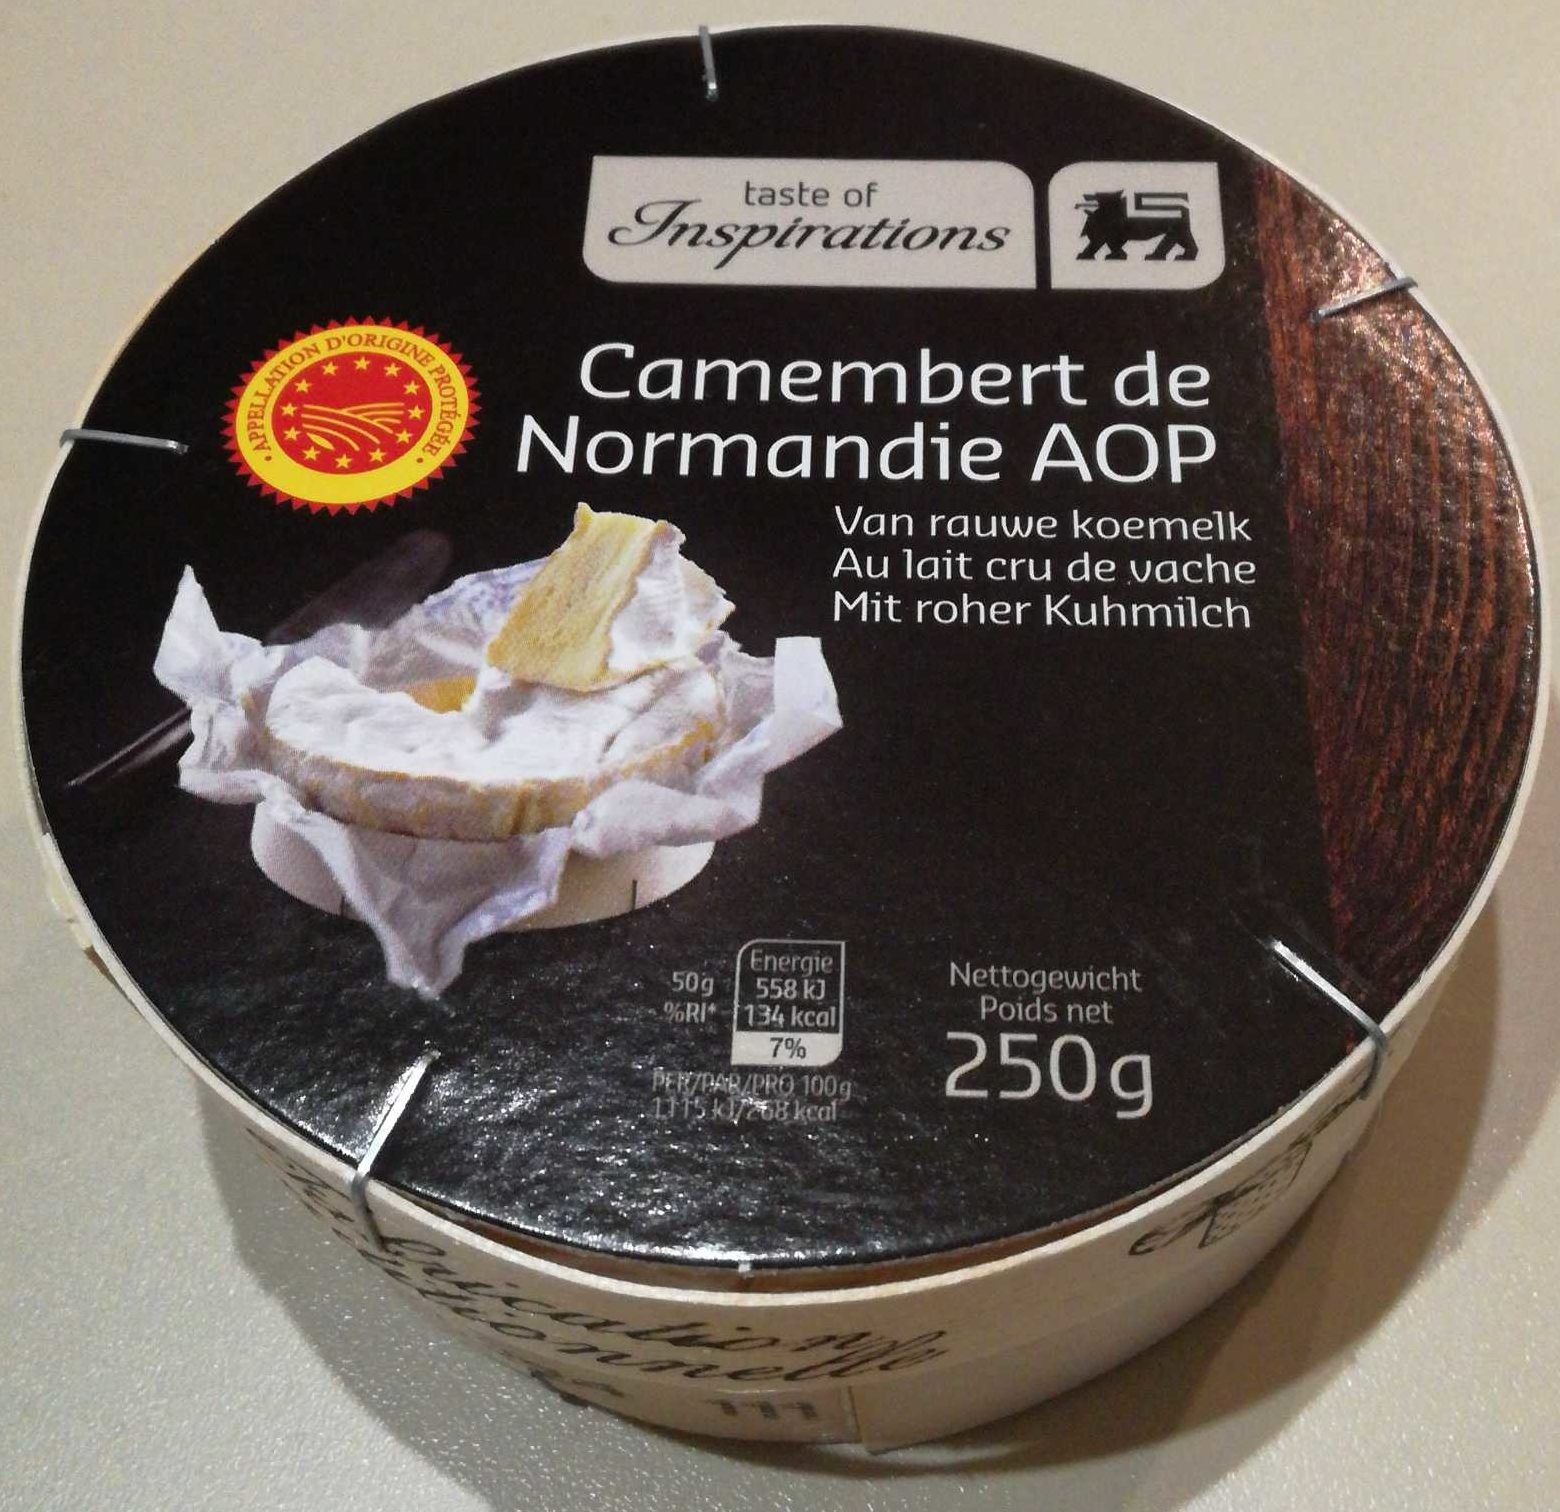 Camembert de Normandie AOP (20,2% MG) - Product - fr